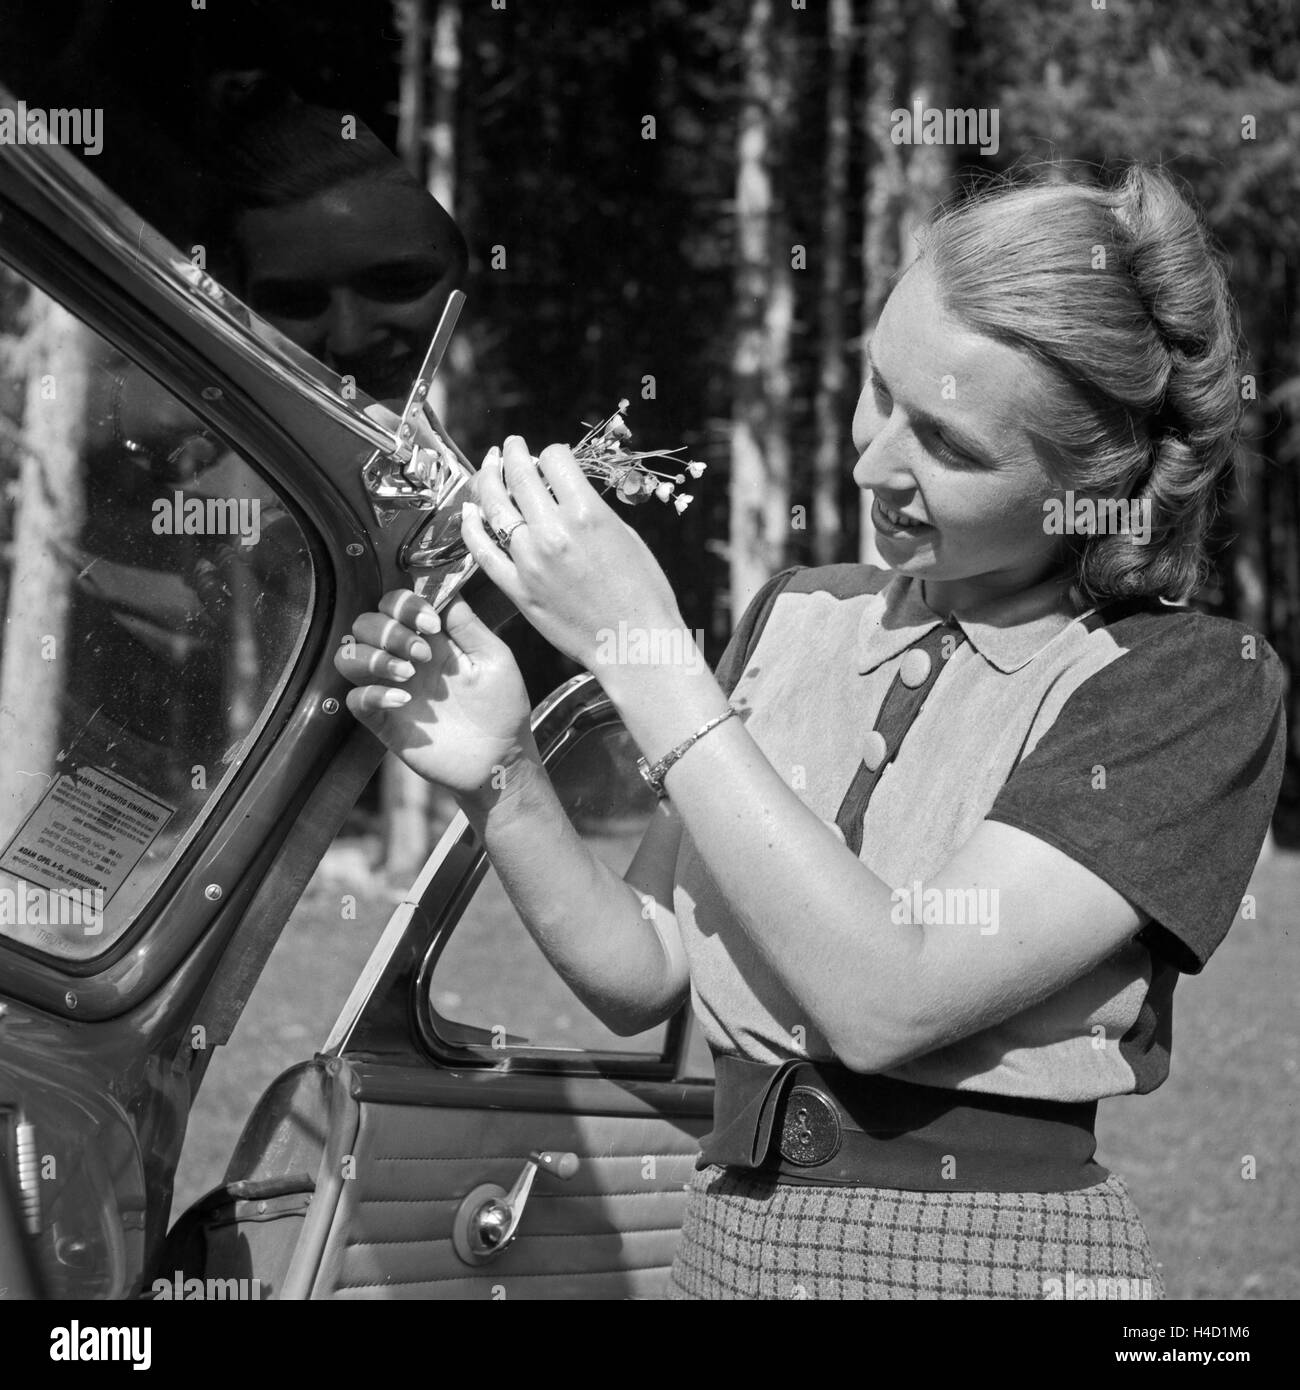 Eine junge Frau befestigt einen kleinen Blumengruß an der Windschutscheibe, Österreich 1930er Jahr. A young woman sticking a few flowers to the screen of a car, Germany 1930s. Stock Photo